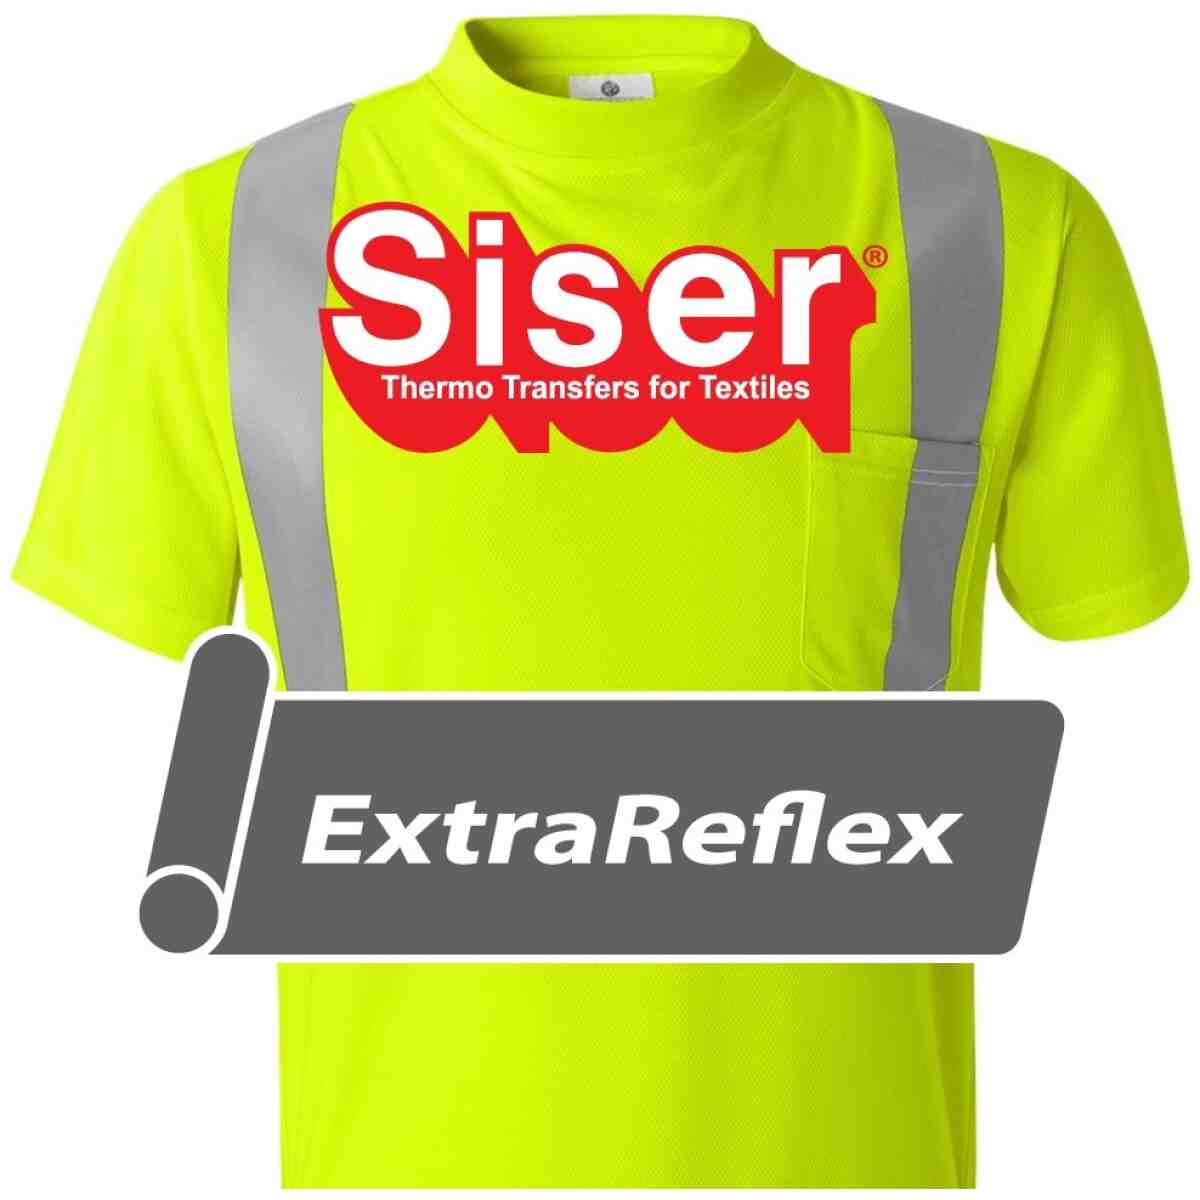 Siser® Extra Reflex Heat Transfer Vinyl 19" SISER®